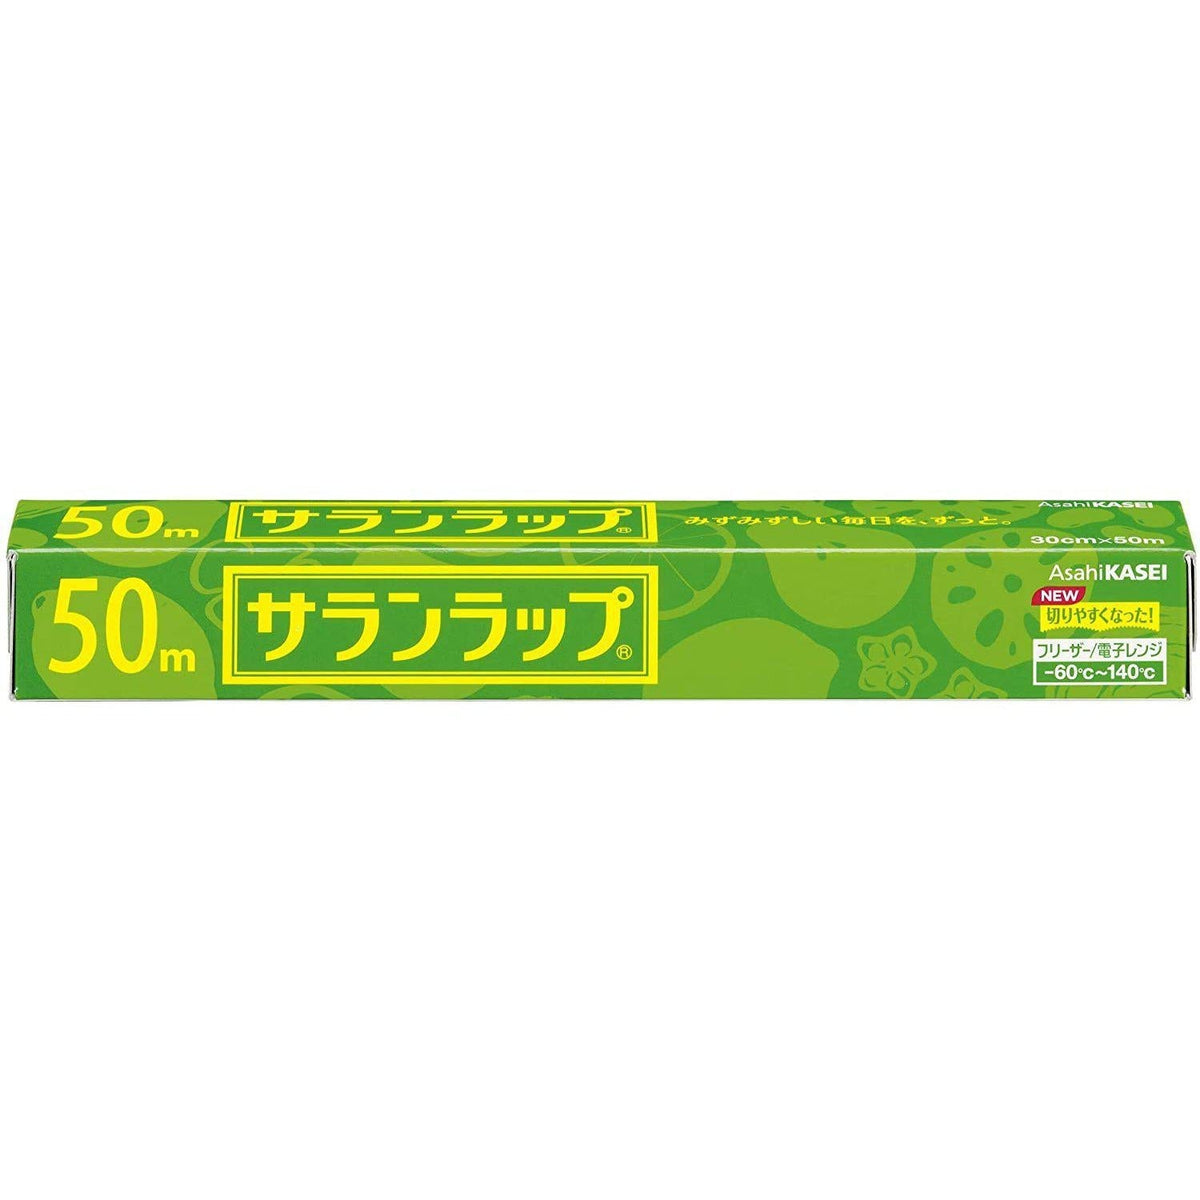 Asahi Kasei Saran Wrap Japanese Plastic Wrap 22cm x 50m – Japanese